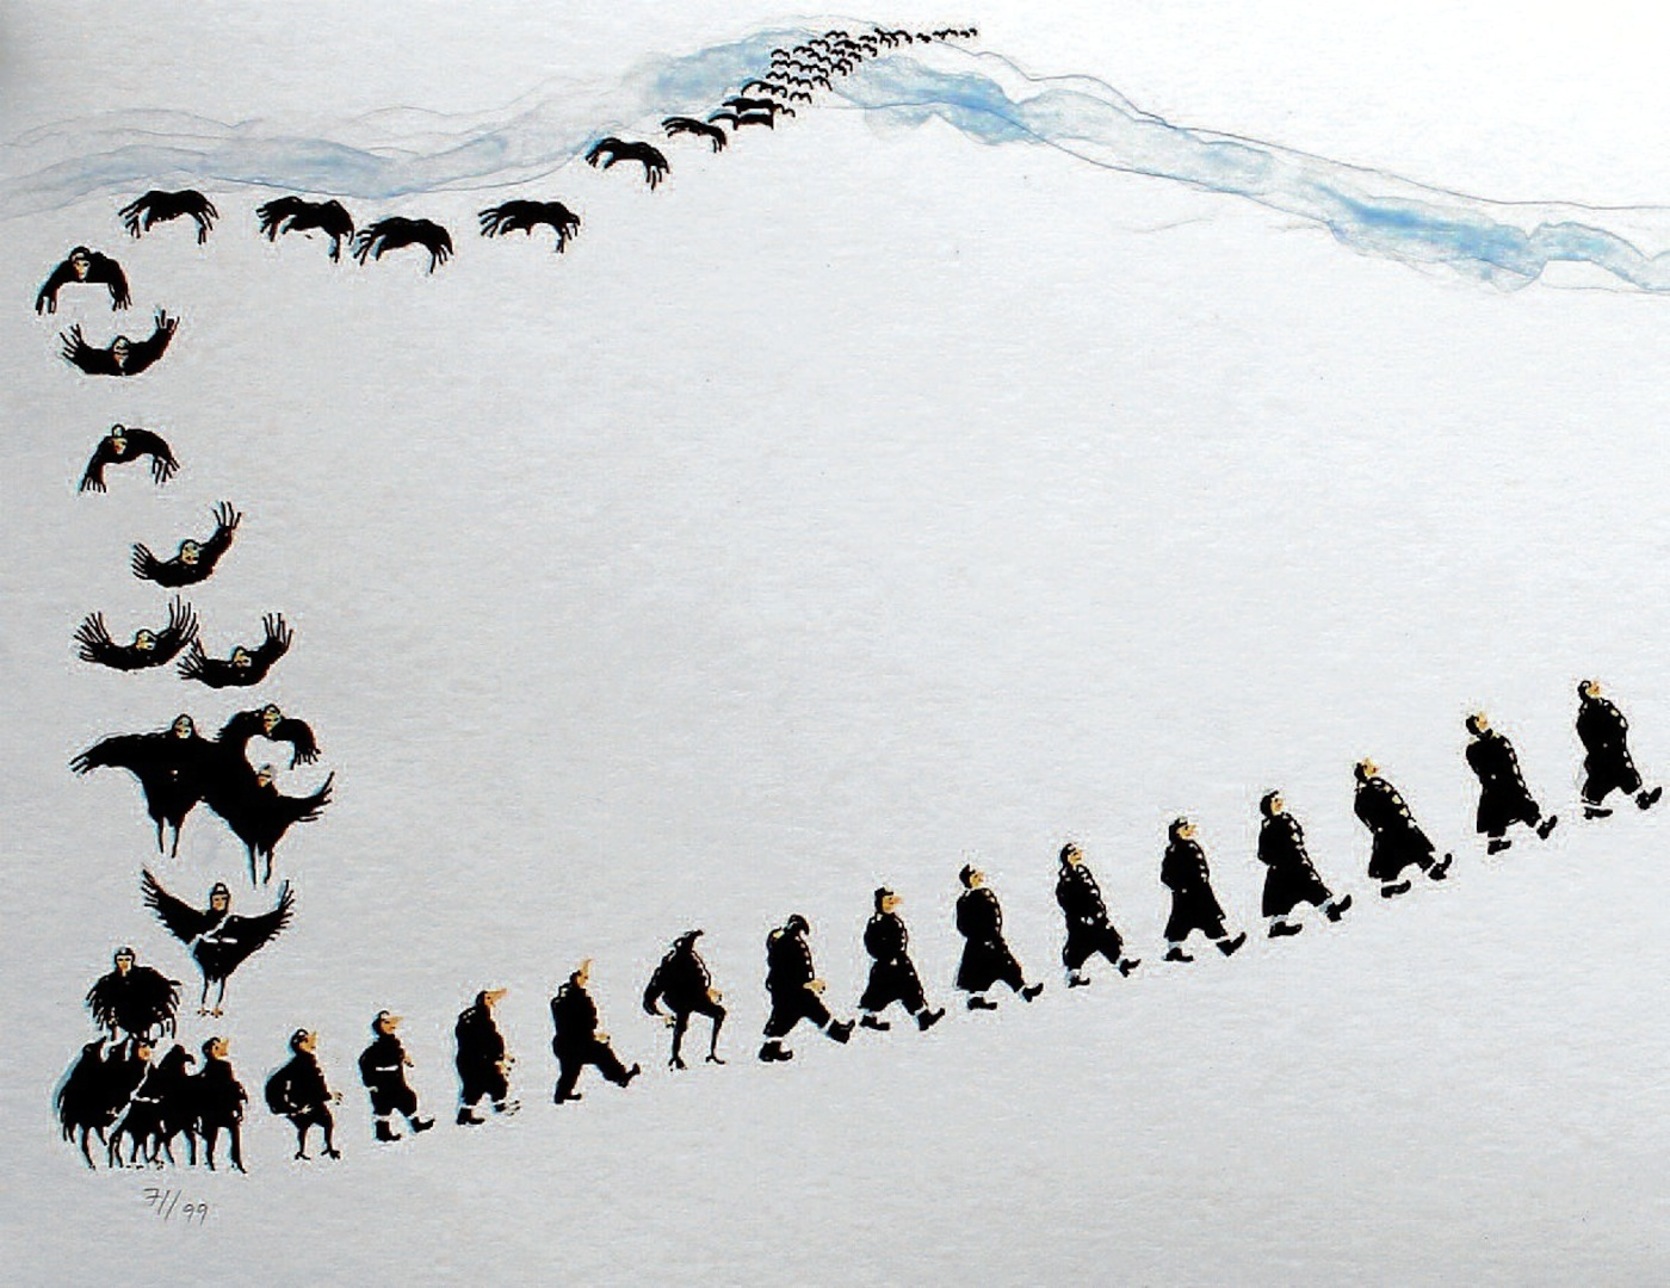 Imagen sobre el pueblo sami.